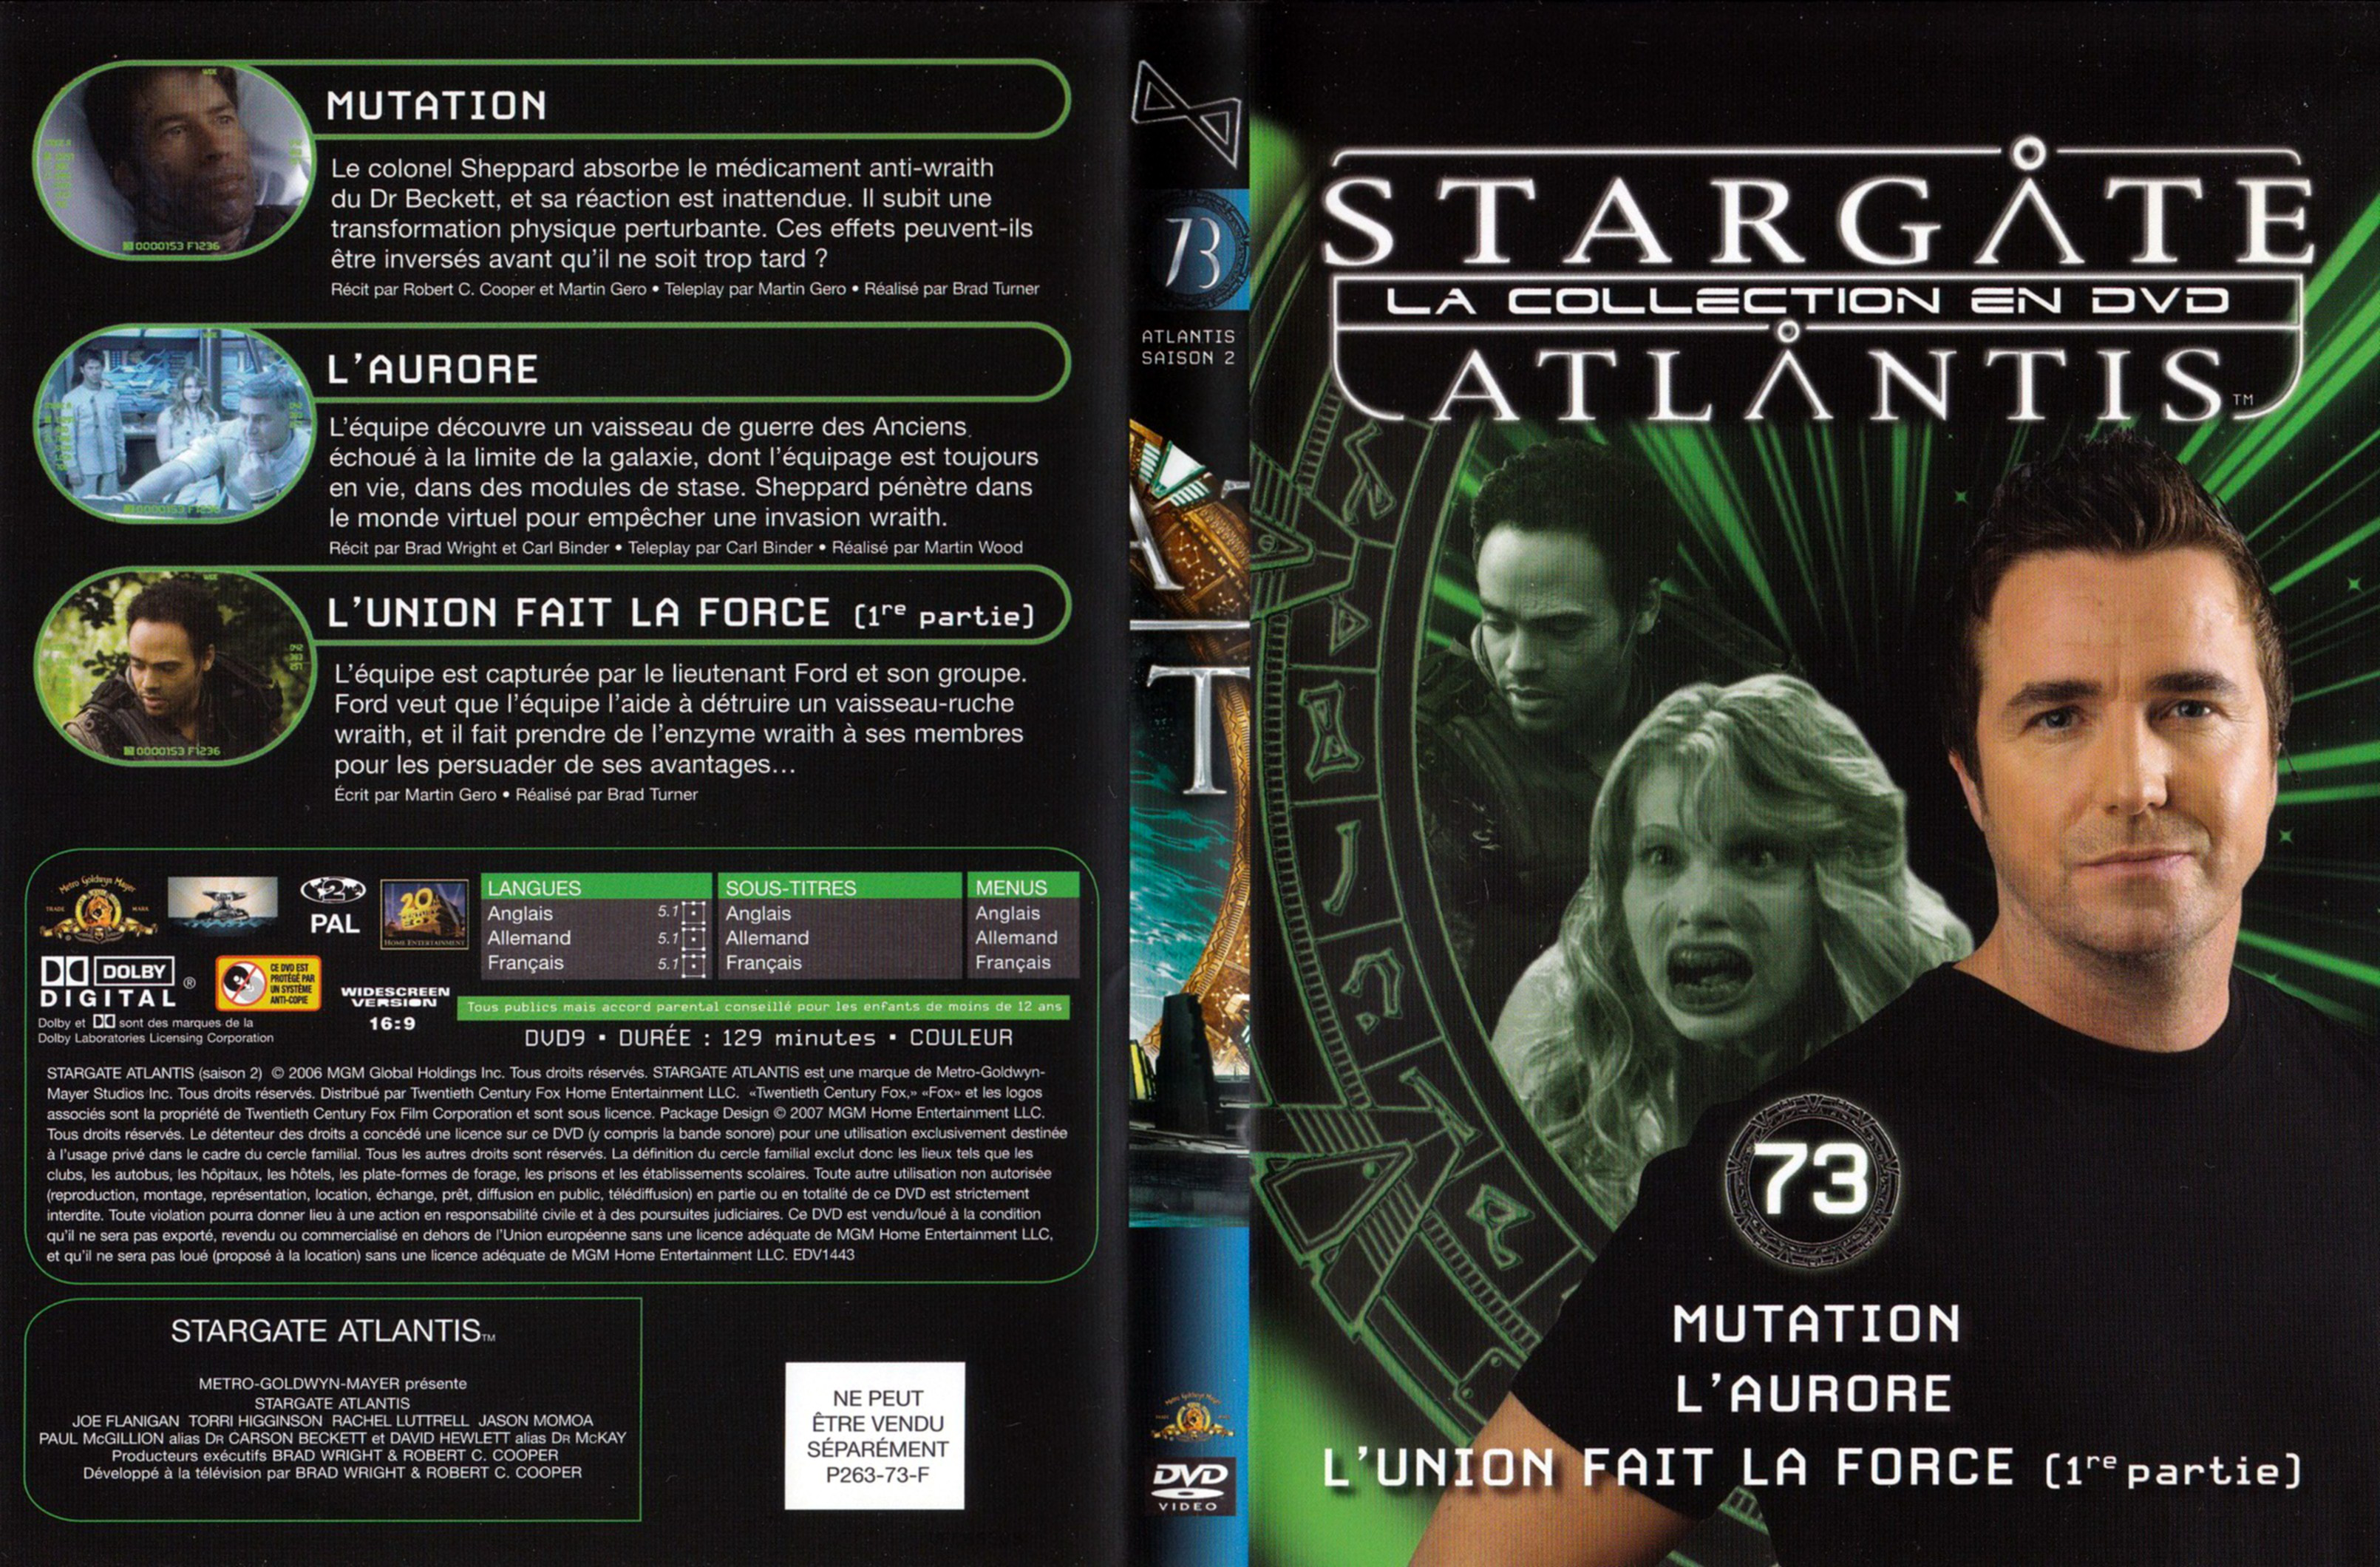 Jaquette DVD Stargate SG1 Atlantis Saison 2 vol 73